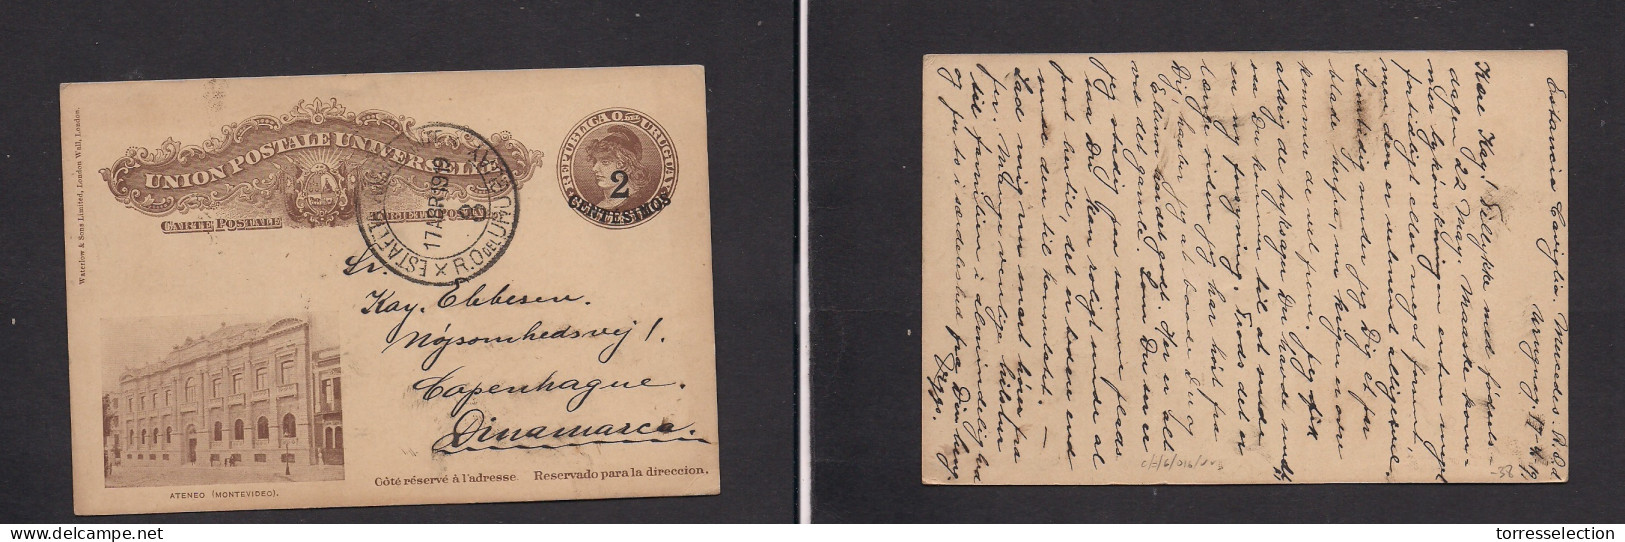 URUGUAY. 1919 (17 Apr) TPO. Estancia Caviglia - Denmark, Cph. 2c Ovpt Ateneo Illustrated Card. VF Scarce Origin + Ambula - Uruguay